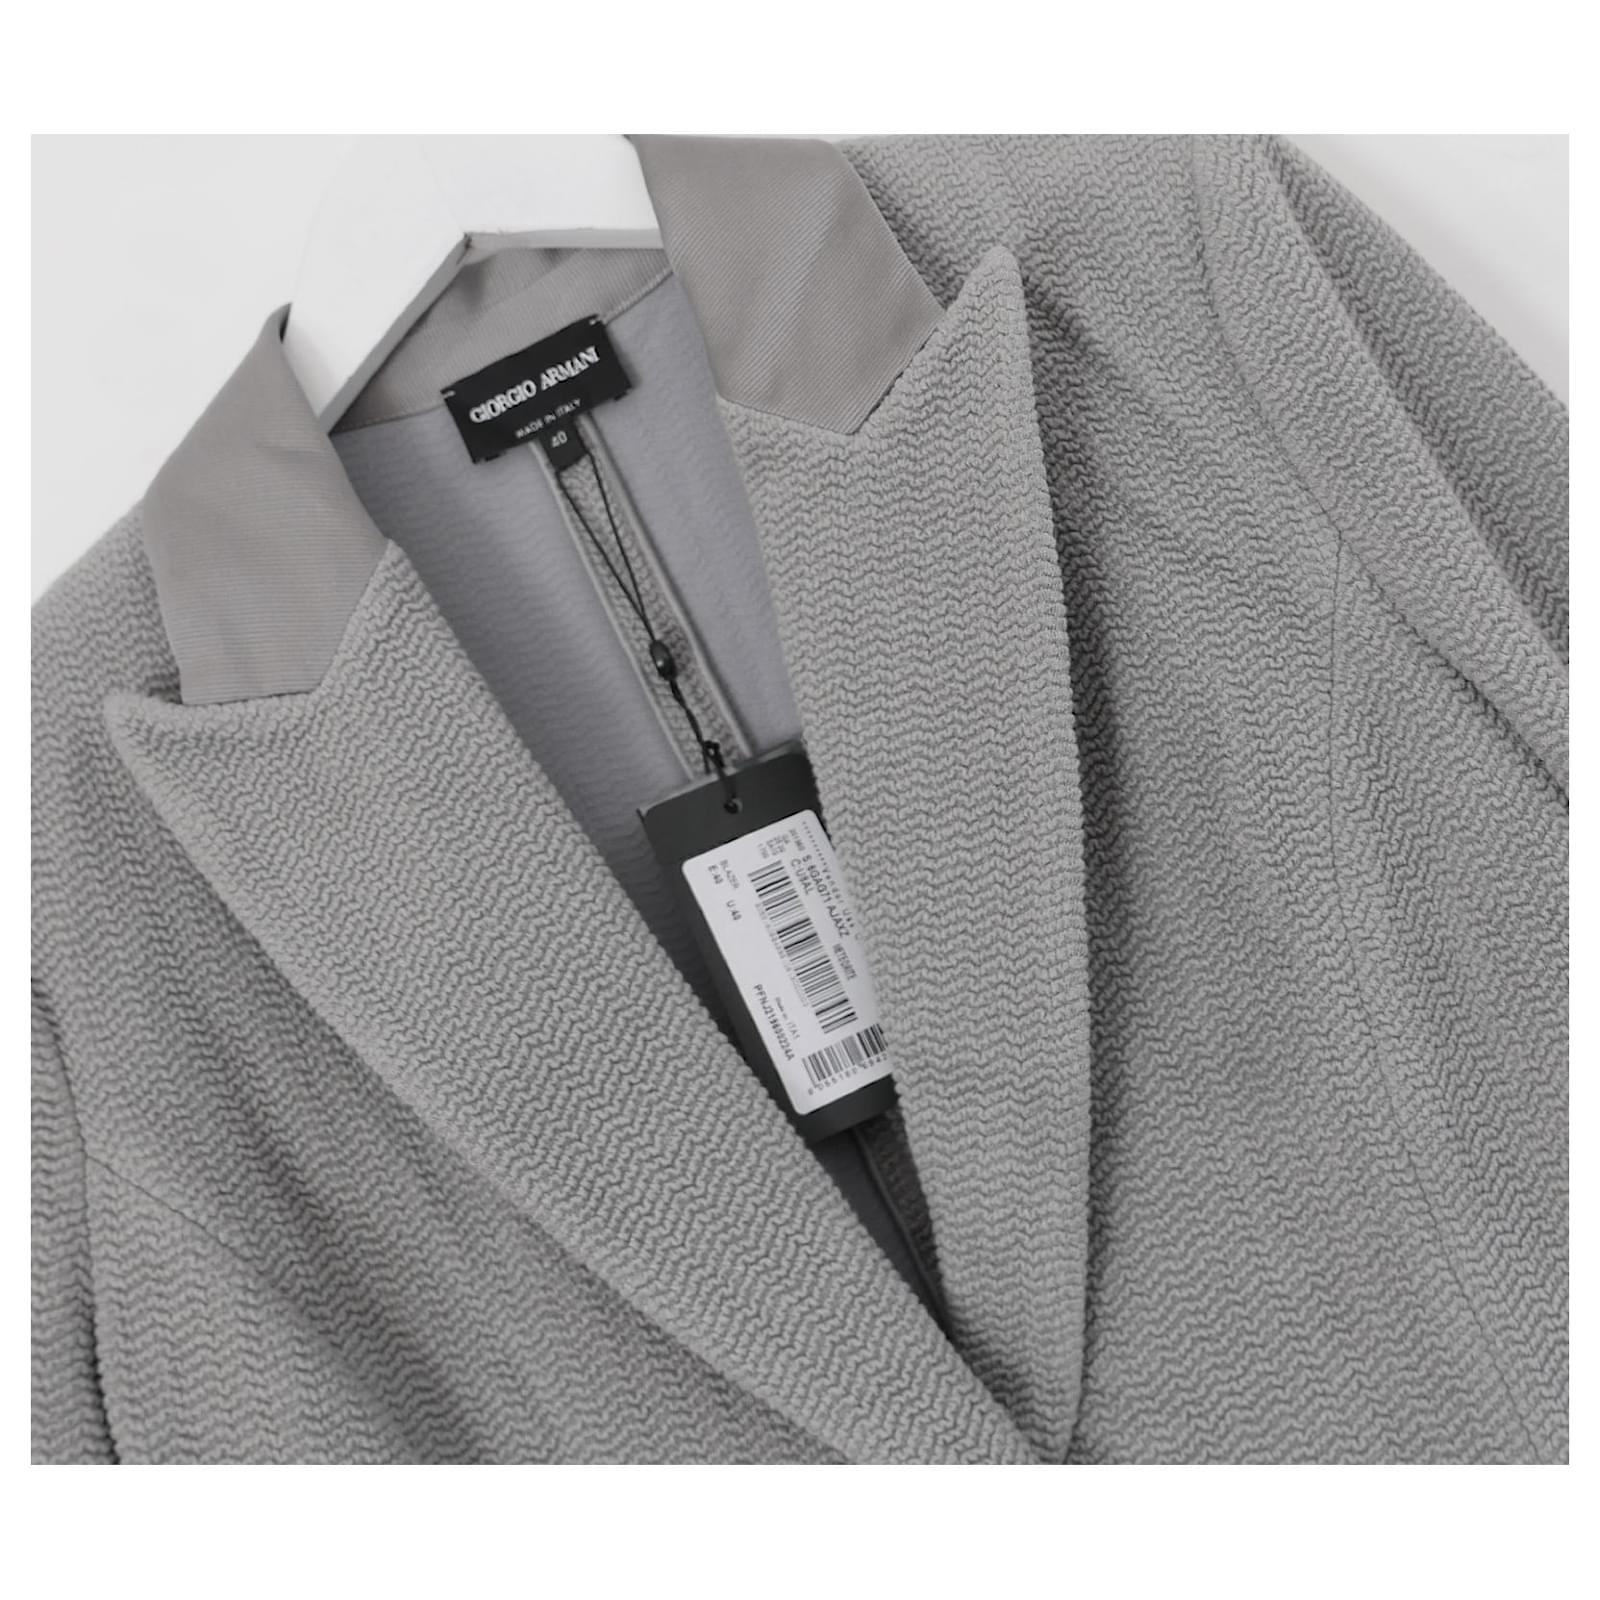 Wunderschöne Giorgio Armani Blazer Jacke.gekauft für £1600 und neu mit Tags/Authentizitätskarte. Gefertigt aus einer Viskosemischung mit Knitterstruktur und Ripsbandbesätzen aus Satin. Hervorragend geschnitten mit gepolsterten Schultern, leichtem